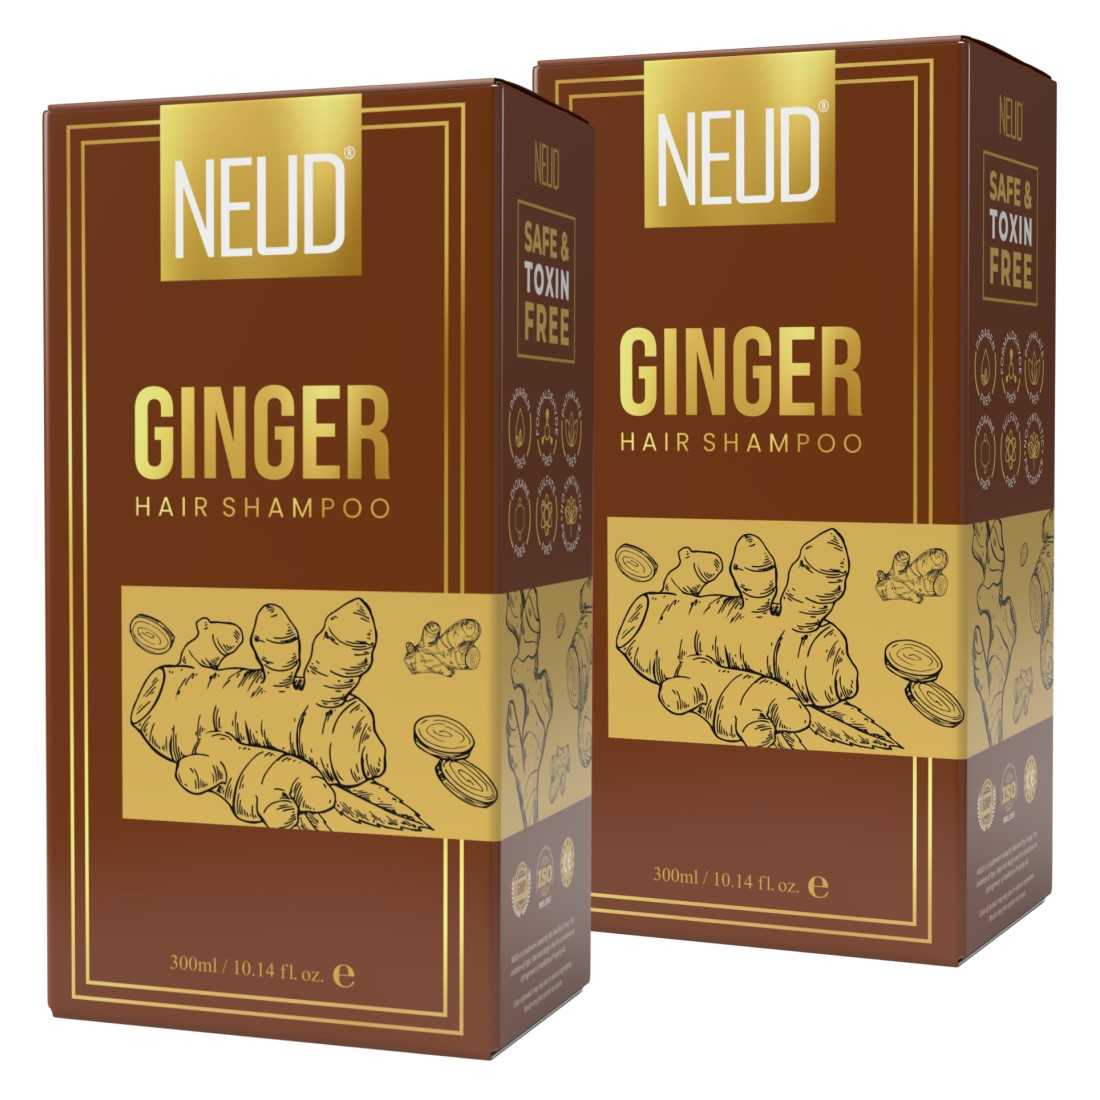 NEUD Ginger Hair Shampoo for Men & Women - 300 ml